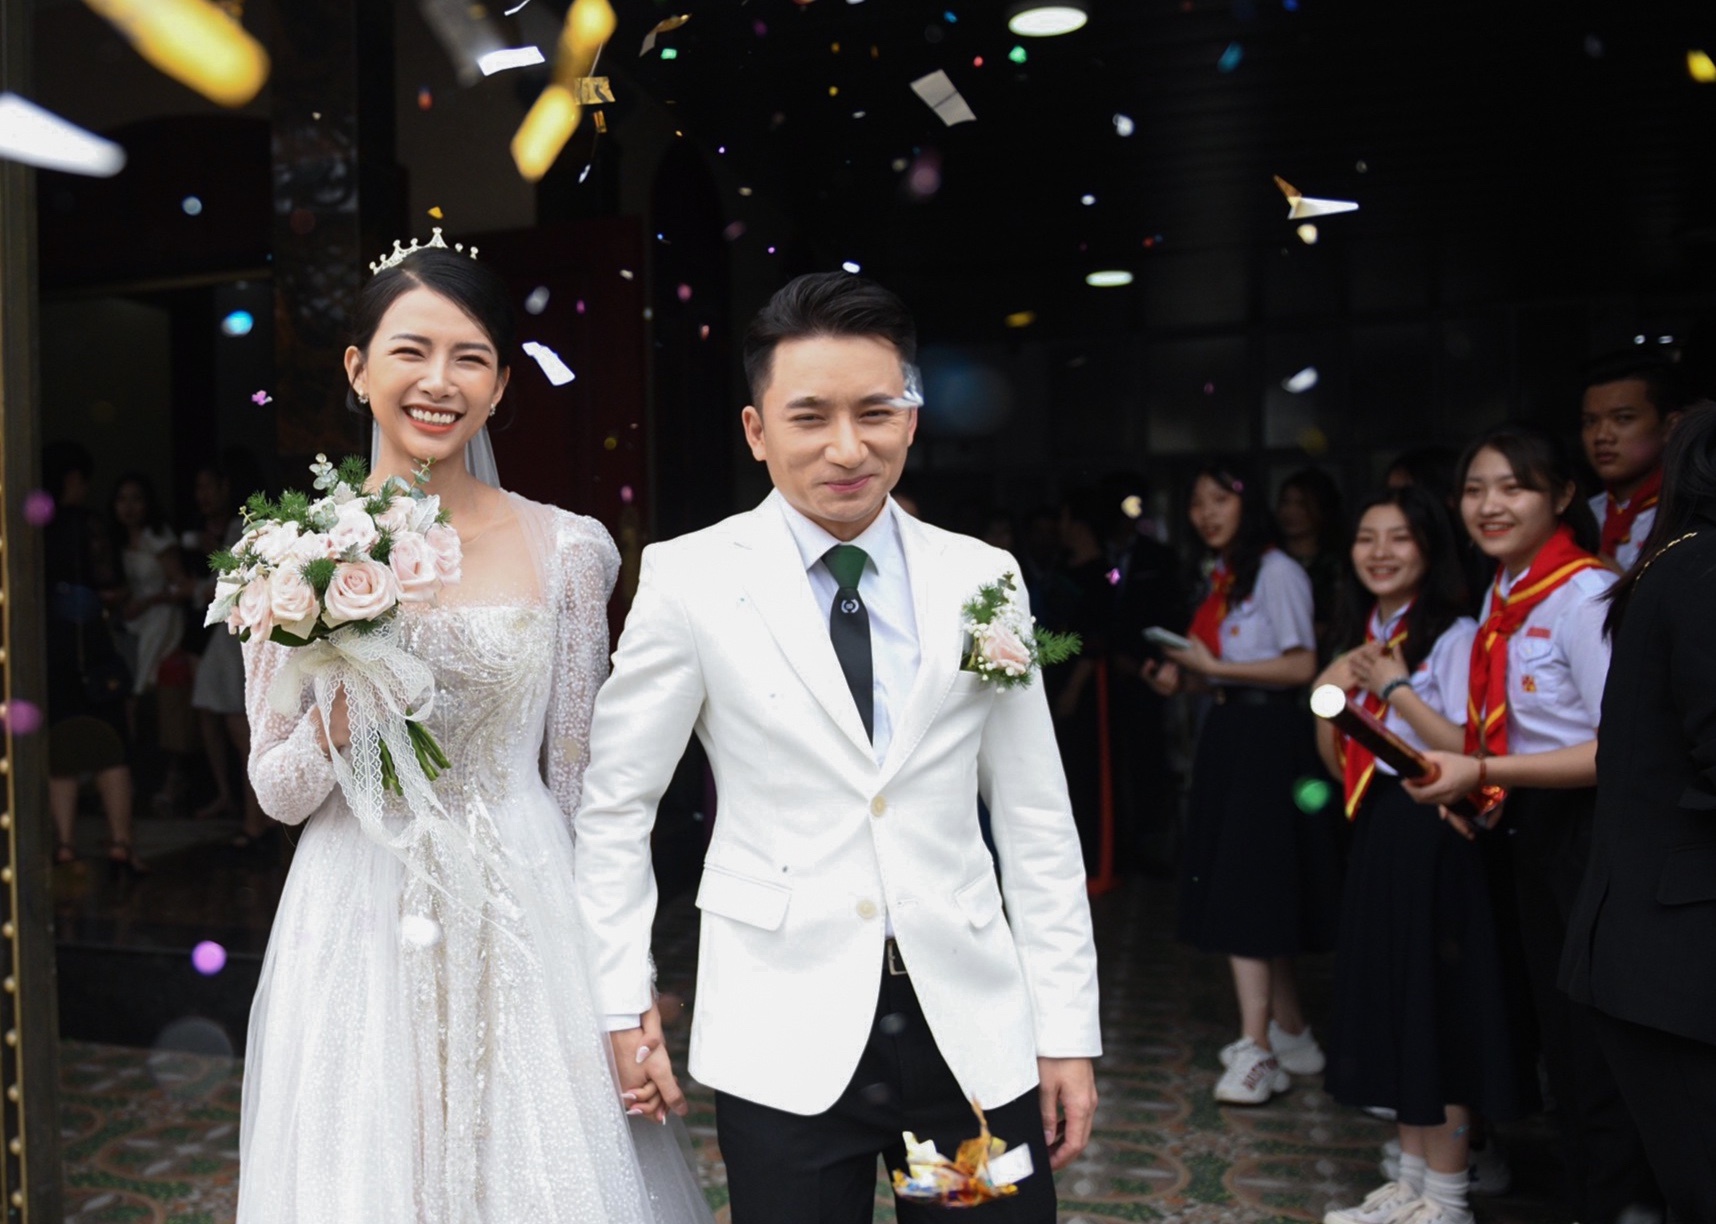 Ca sĩ Phan Mạnh Quỳnh hoãn đám cưới vì Covid-19